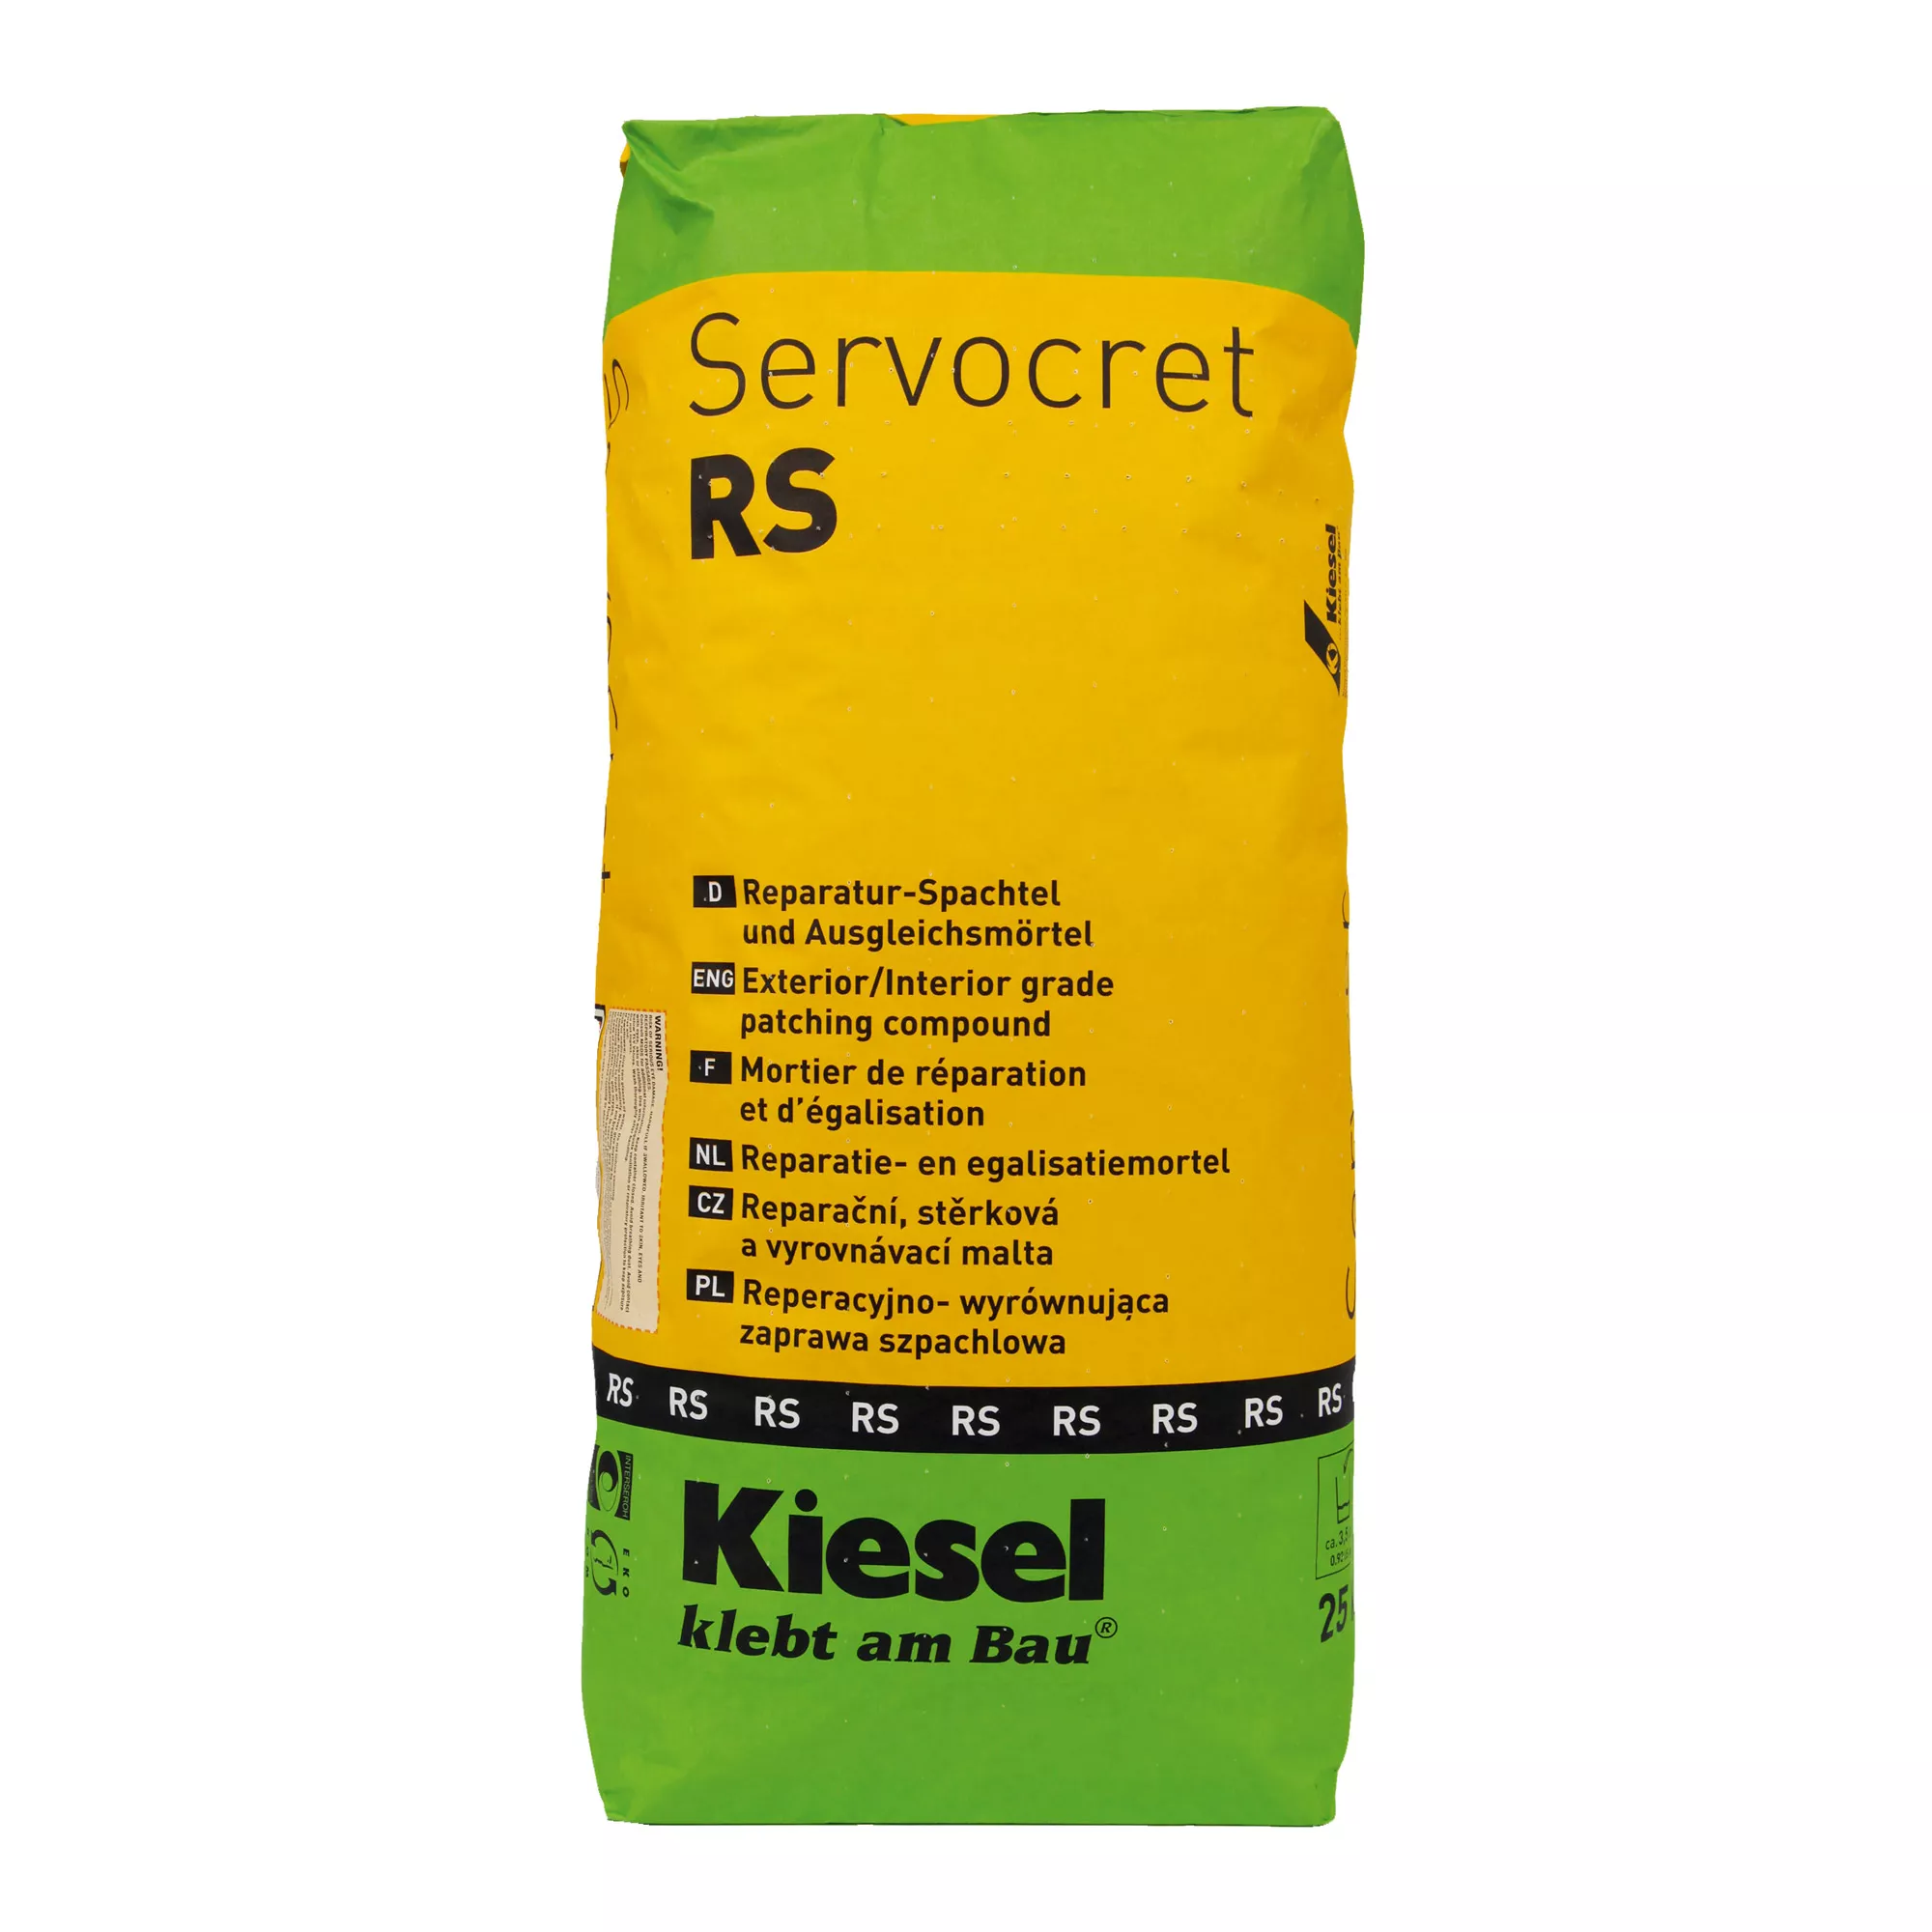 Kiesel Servocret RS - Rychlejší Plnicí A Vyrovnávací Malta (25 KG)